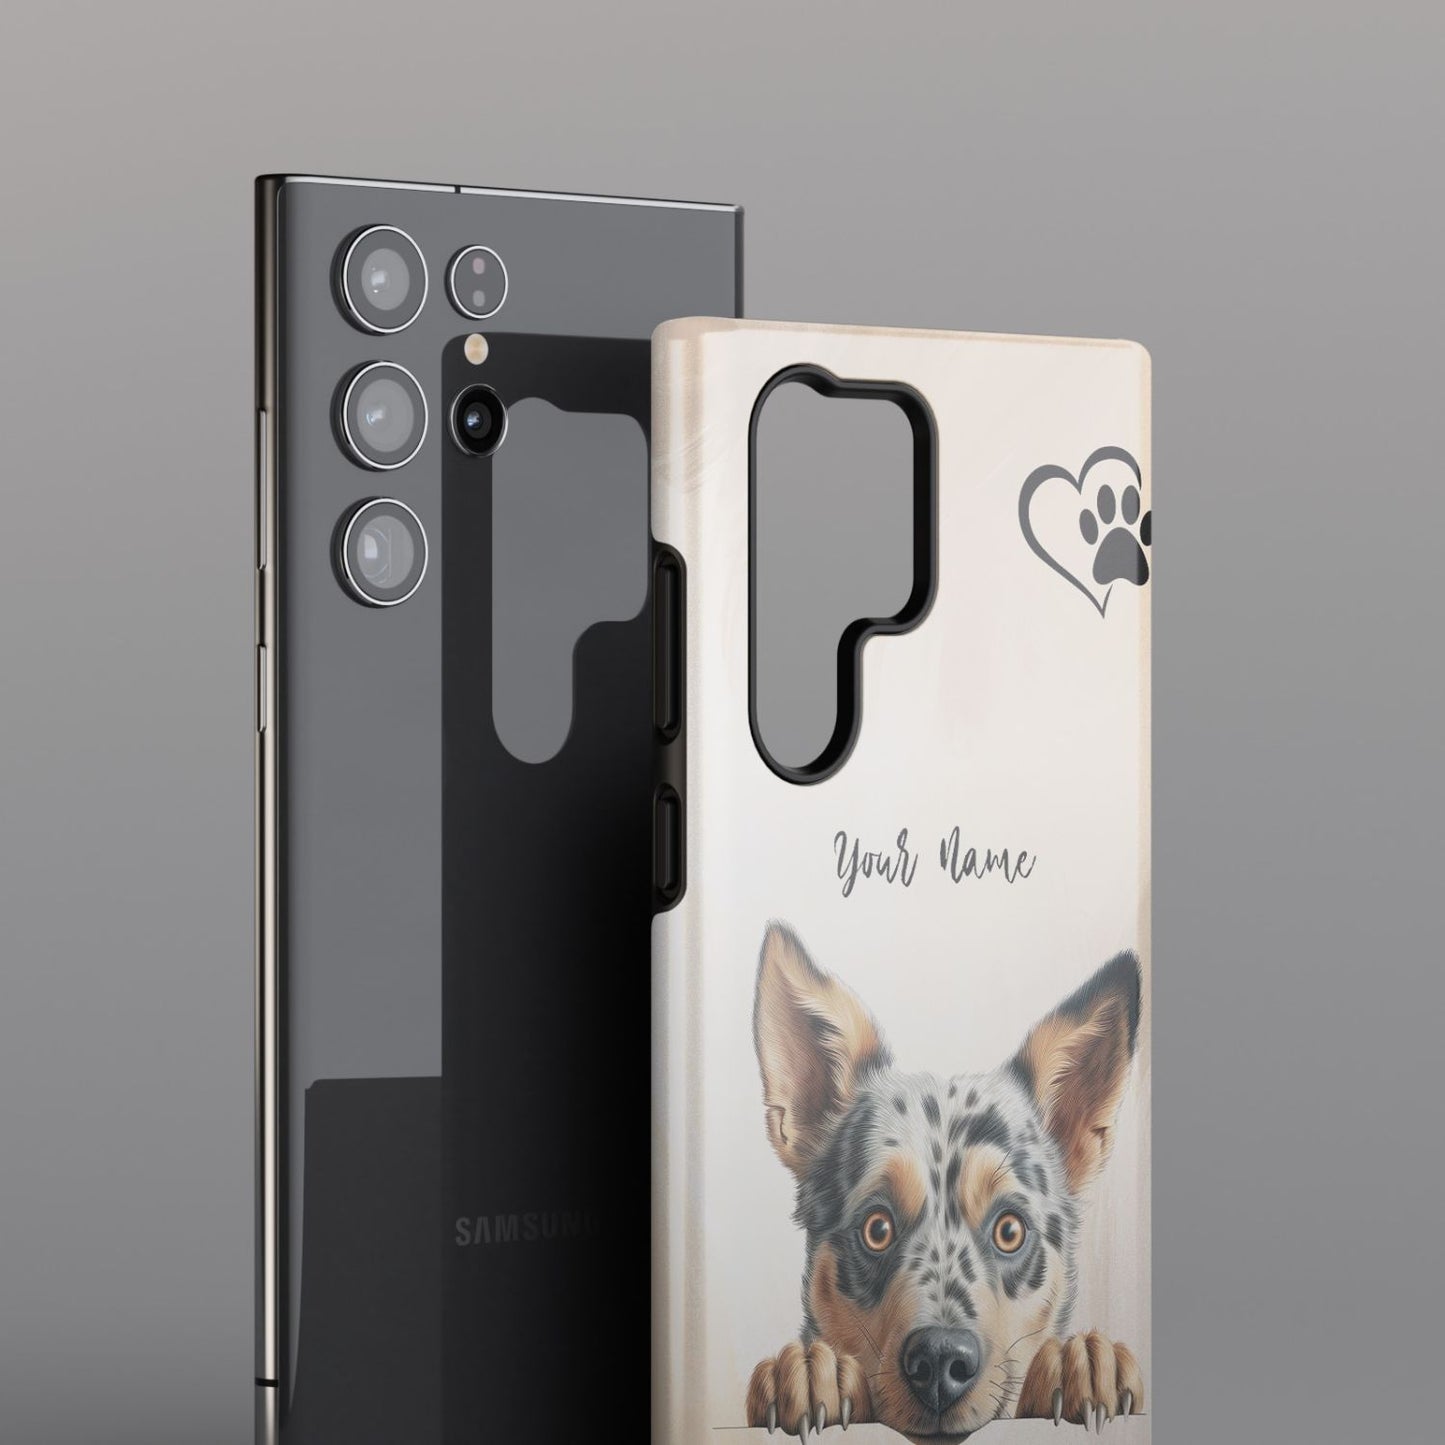 Australian Cattle Dog Dog Phone - Samsung Galaxy S